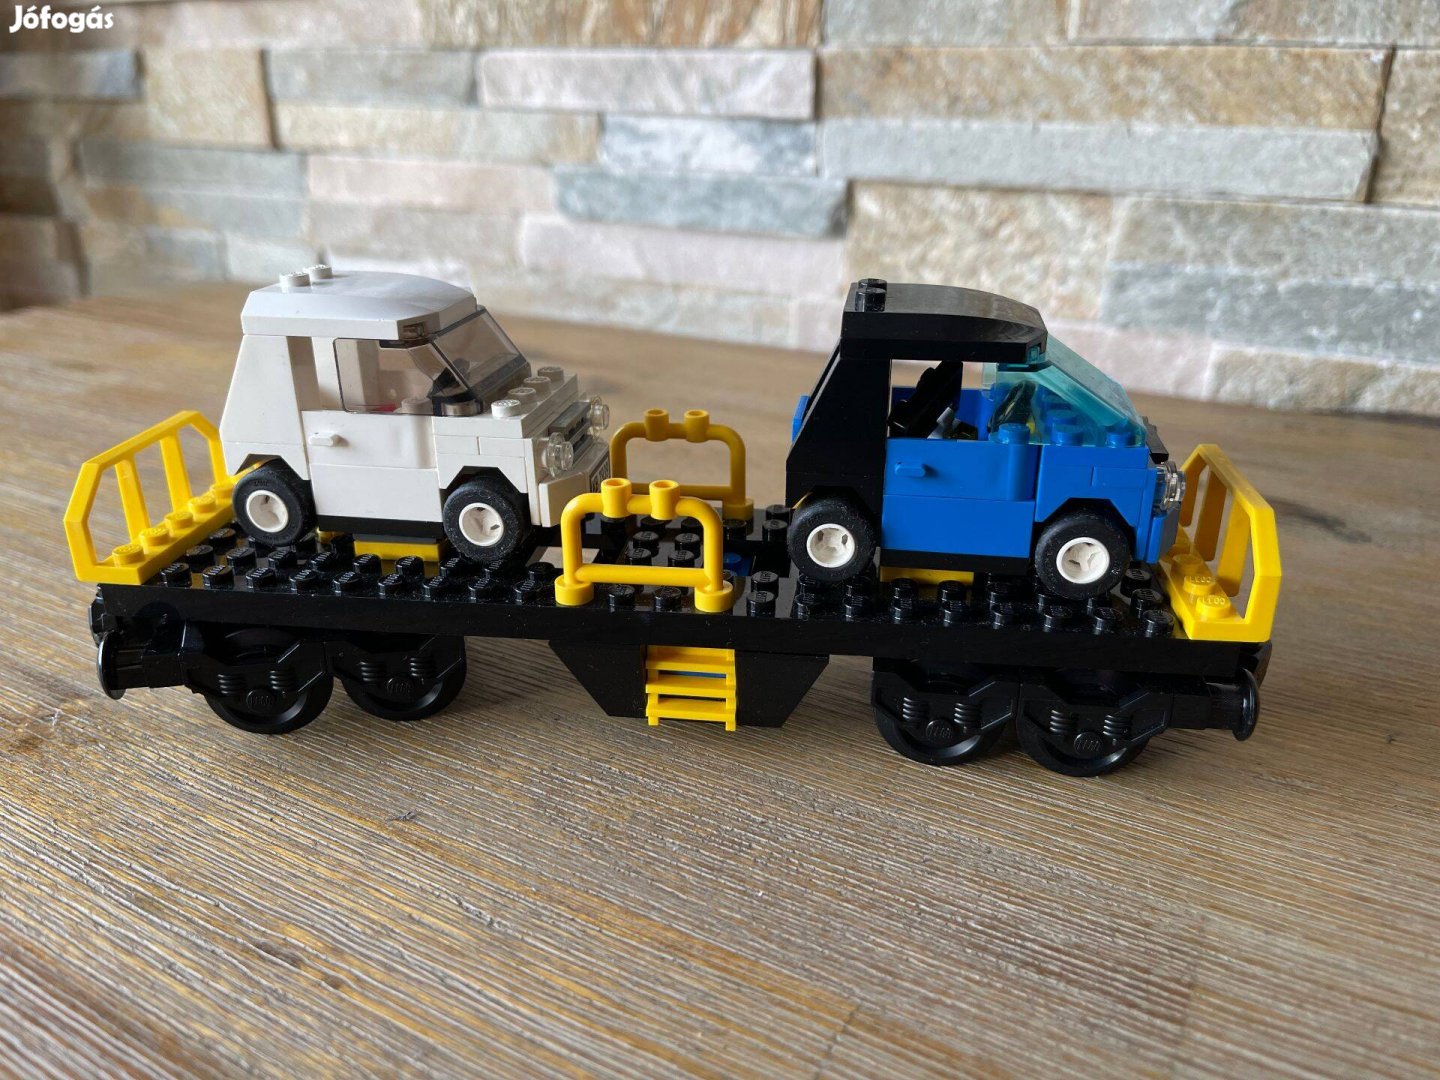 Lego vasuti autoszallito vagon Lego tehervagon Lego vonat vagon